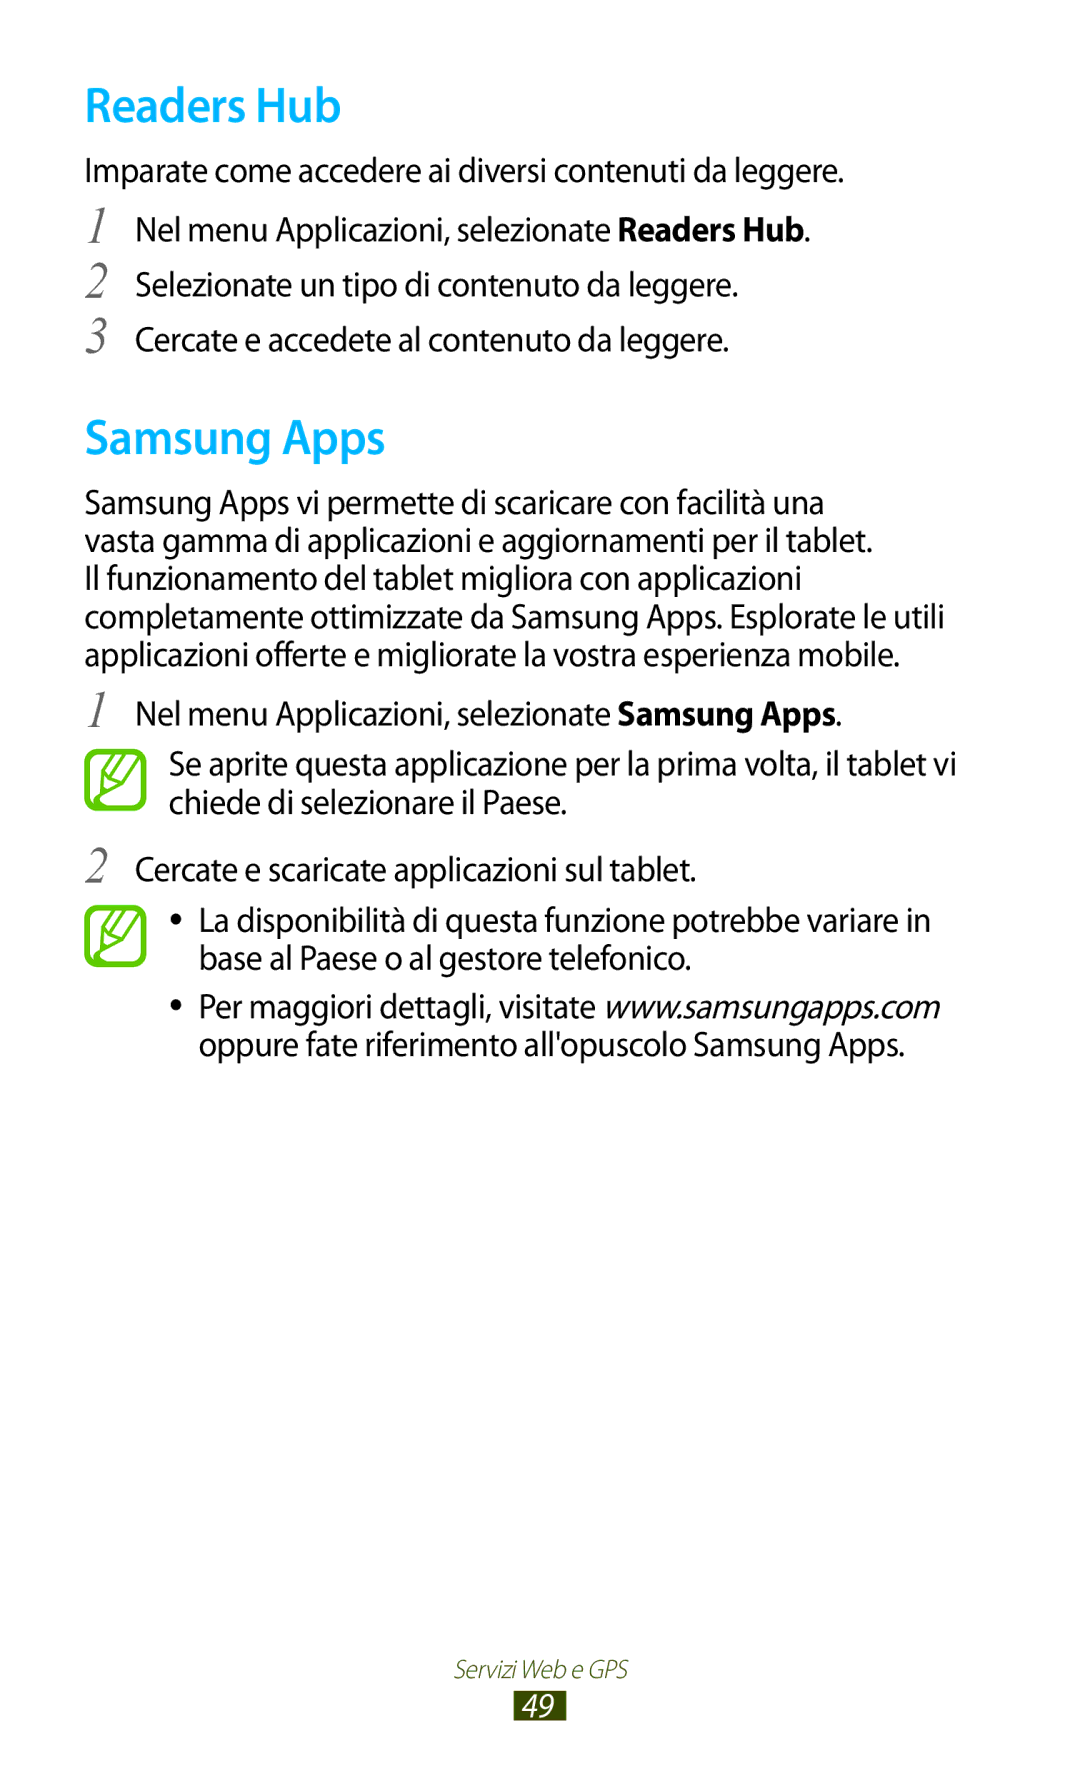 Samsung GT-P7500UWDHUI, GT-P7500FKDOMN Readers Hub, Samsung Apps, Imparate come accedere ai diversi contenuti da leggere 